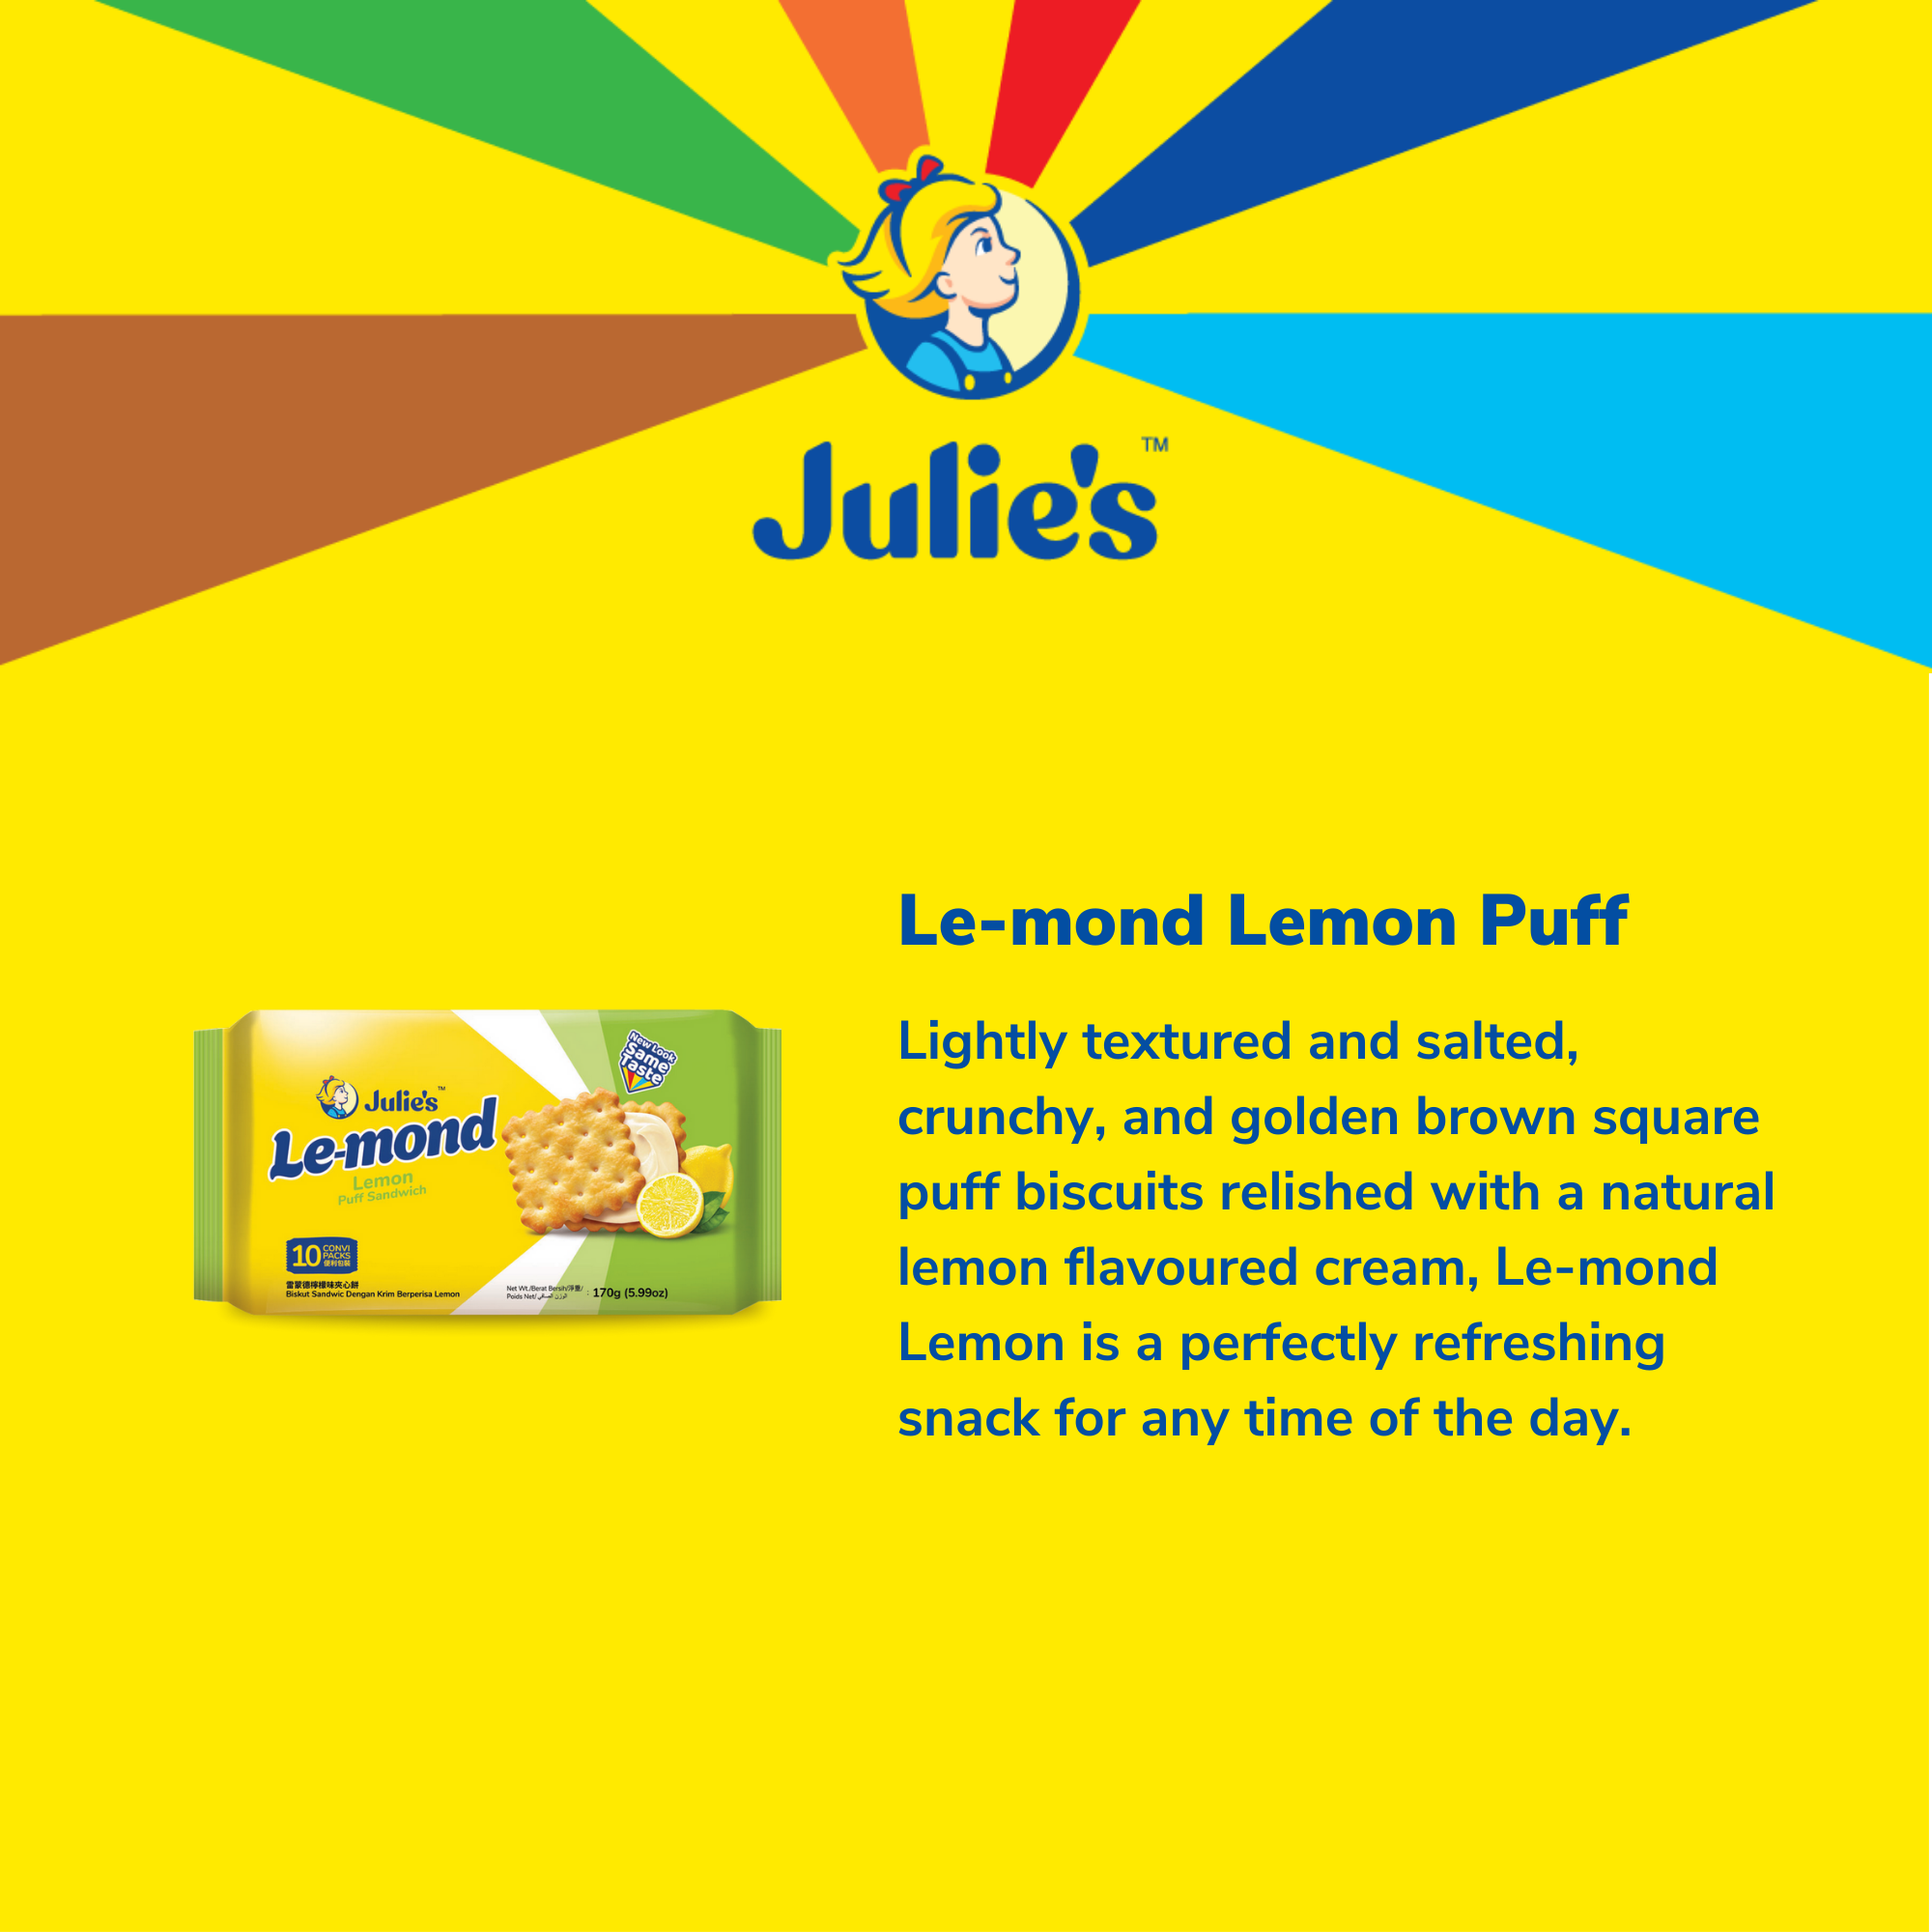 Julie's Le-mond Lemon Puff Sandwich 170g x 2 packs